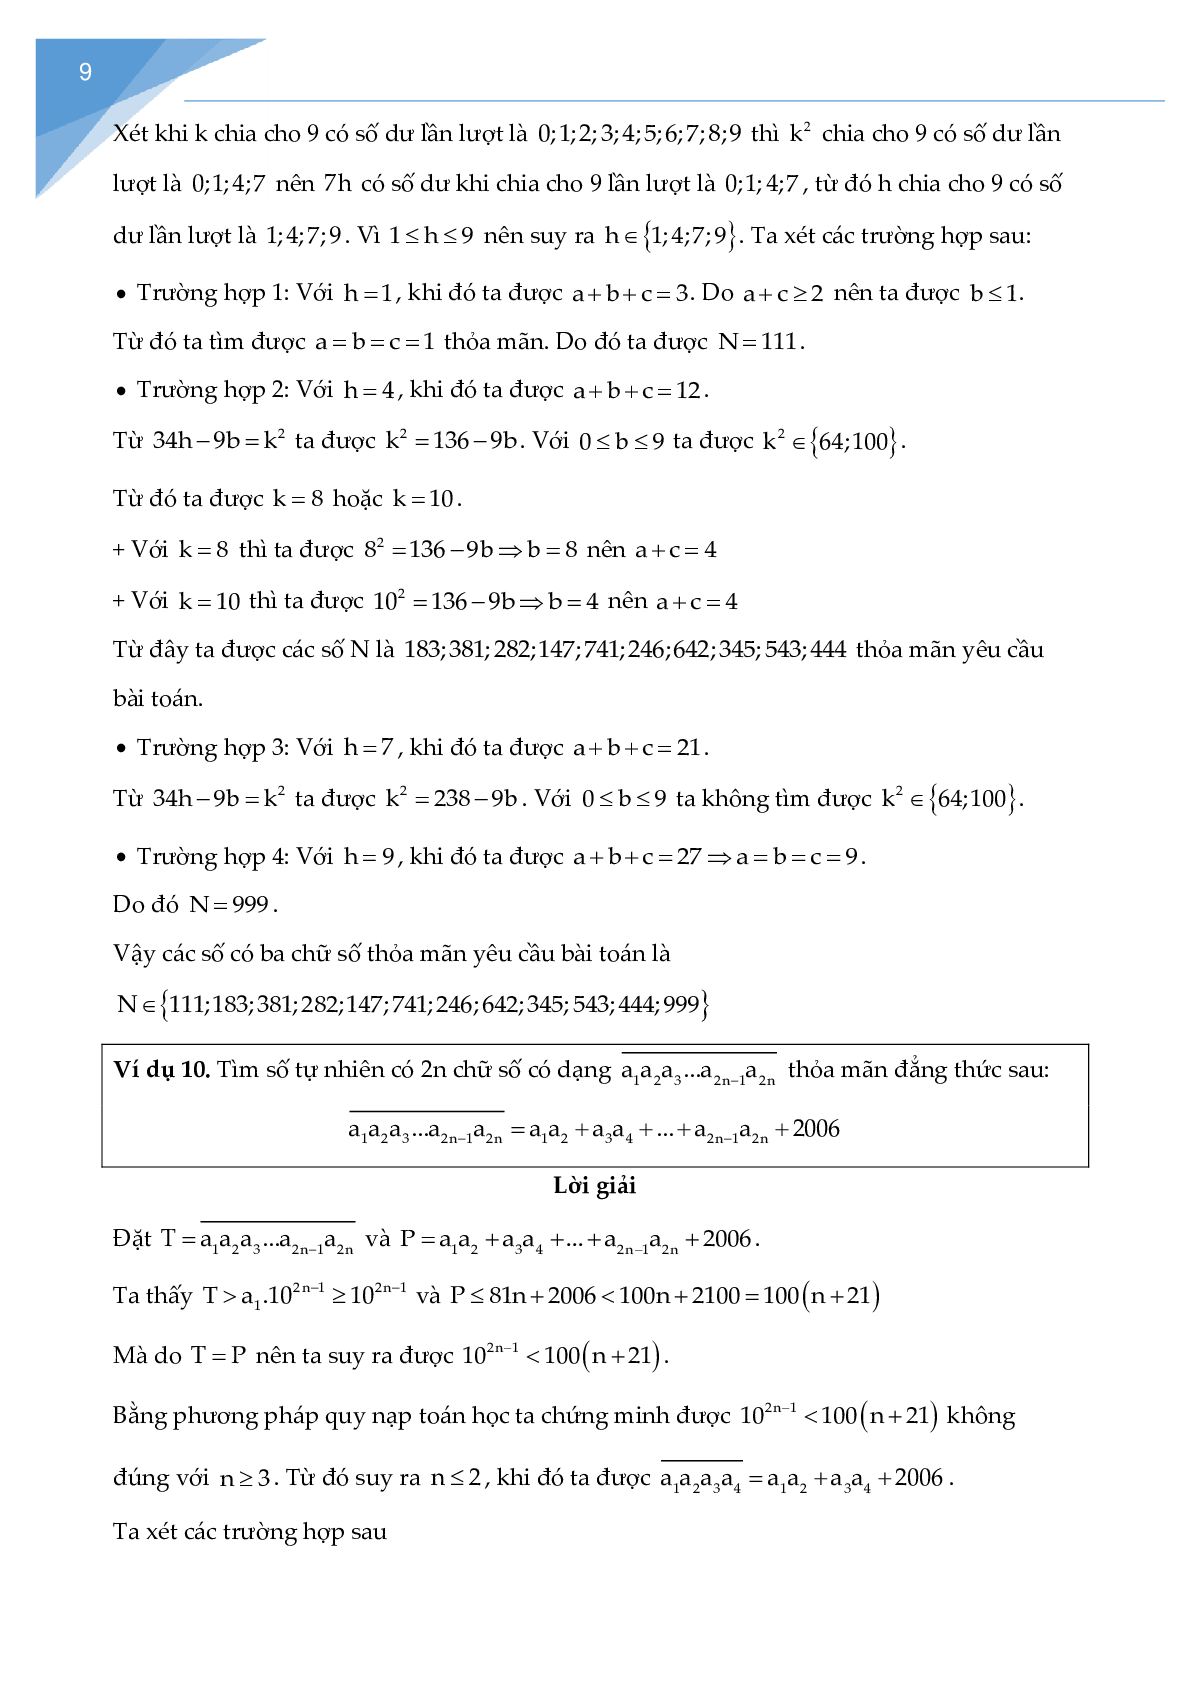 Các bài toán về cấu tạo số chọn lọc (trang 9)